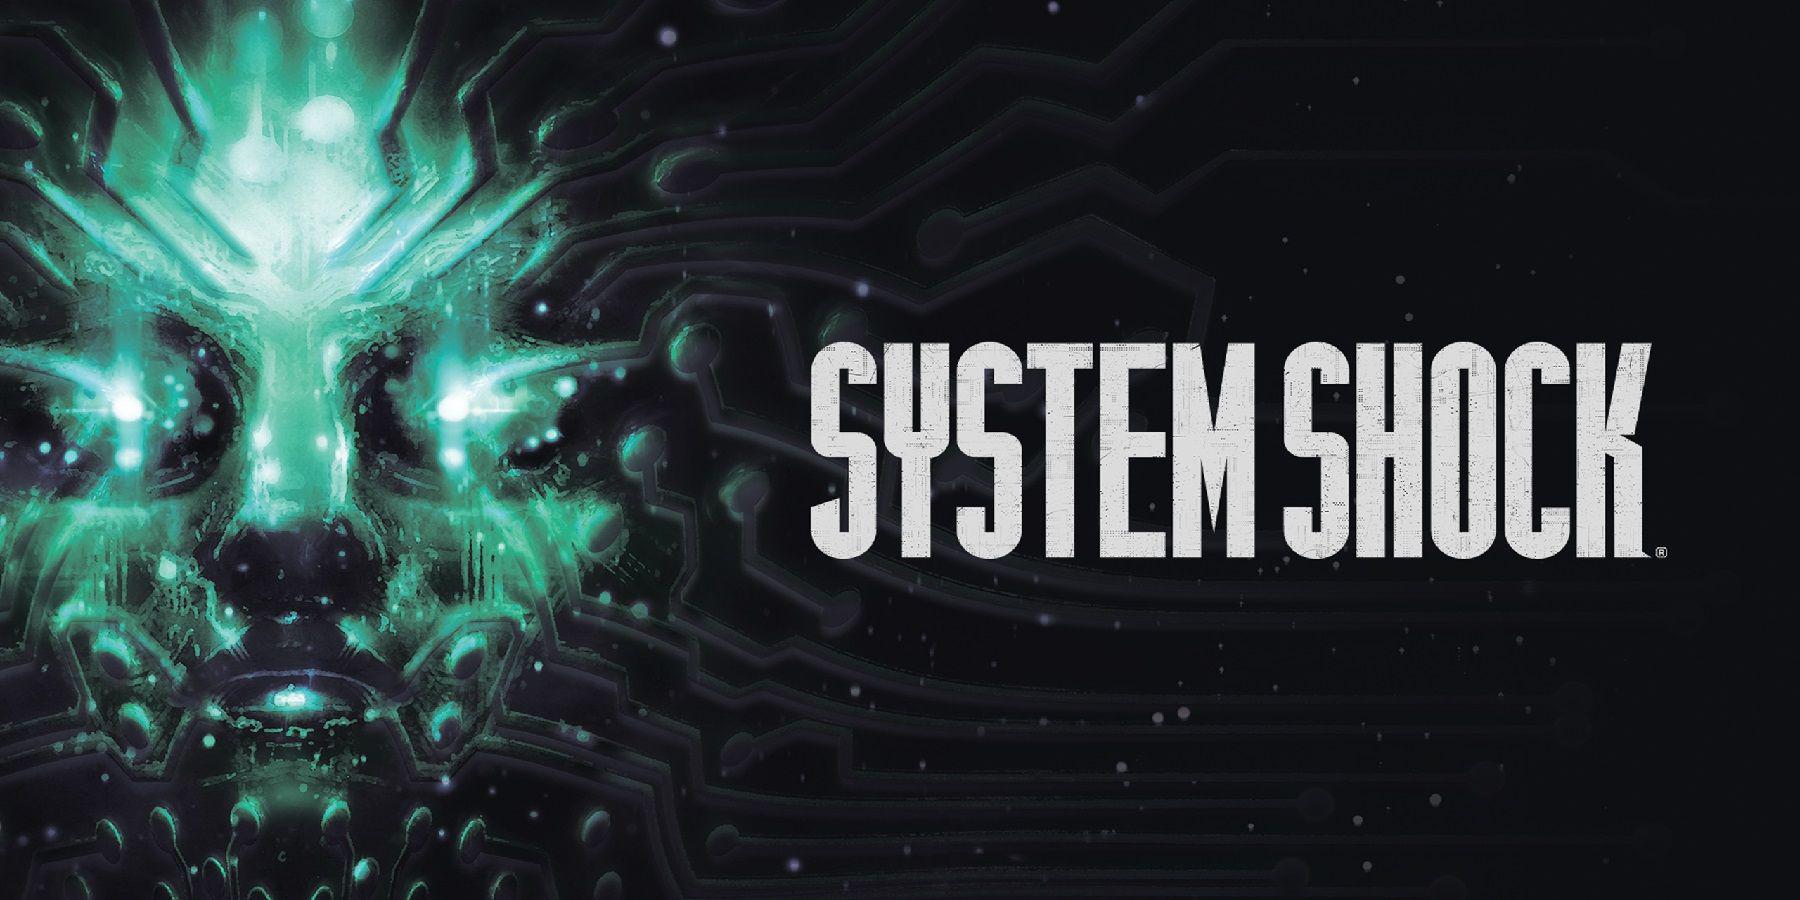 Desenvolvimento do System Shock Remake em estágios finais, janela de lançamento revelada